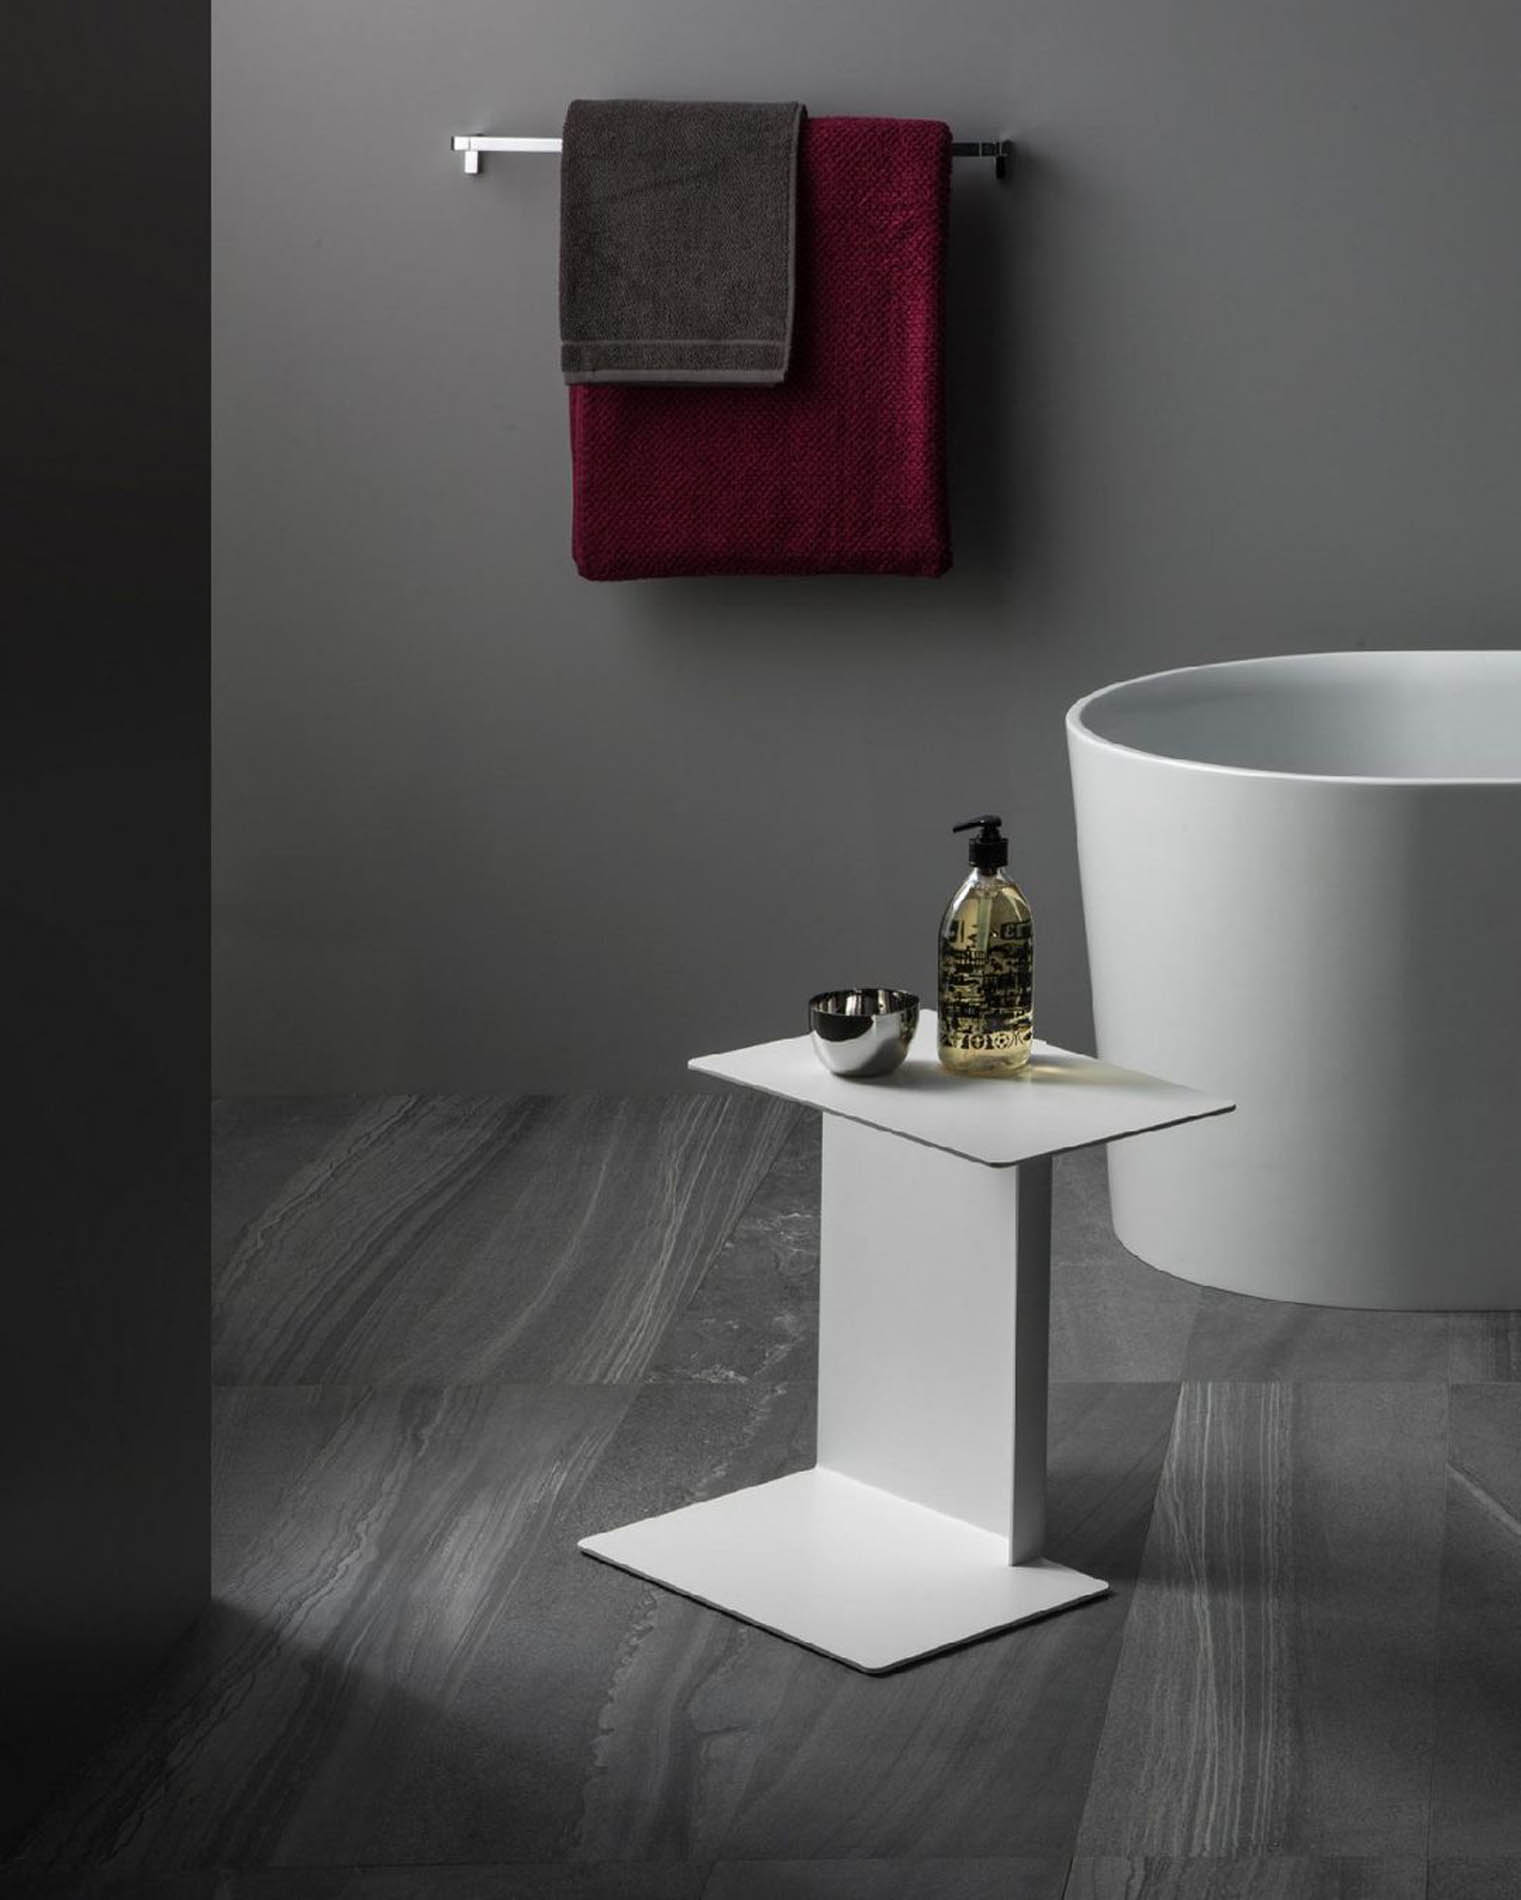 Presentamos en Barcelona unas bañeras de diseño minimalista